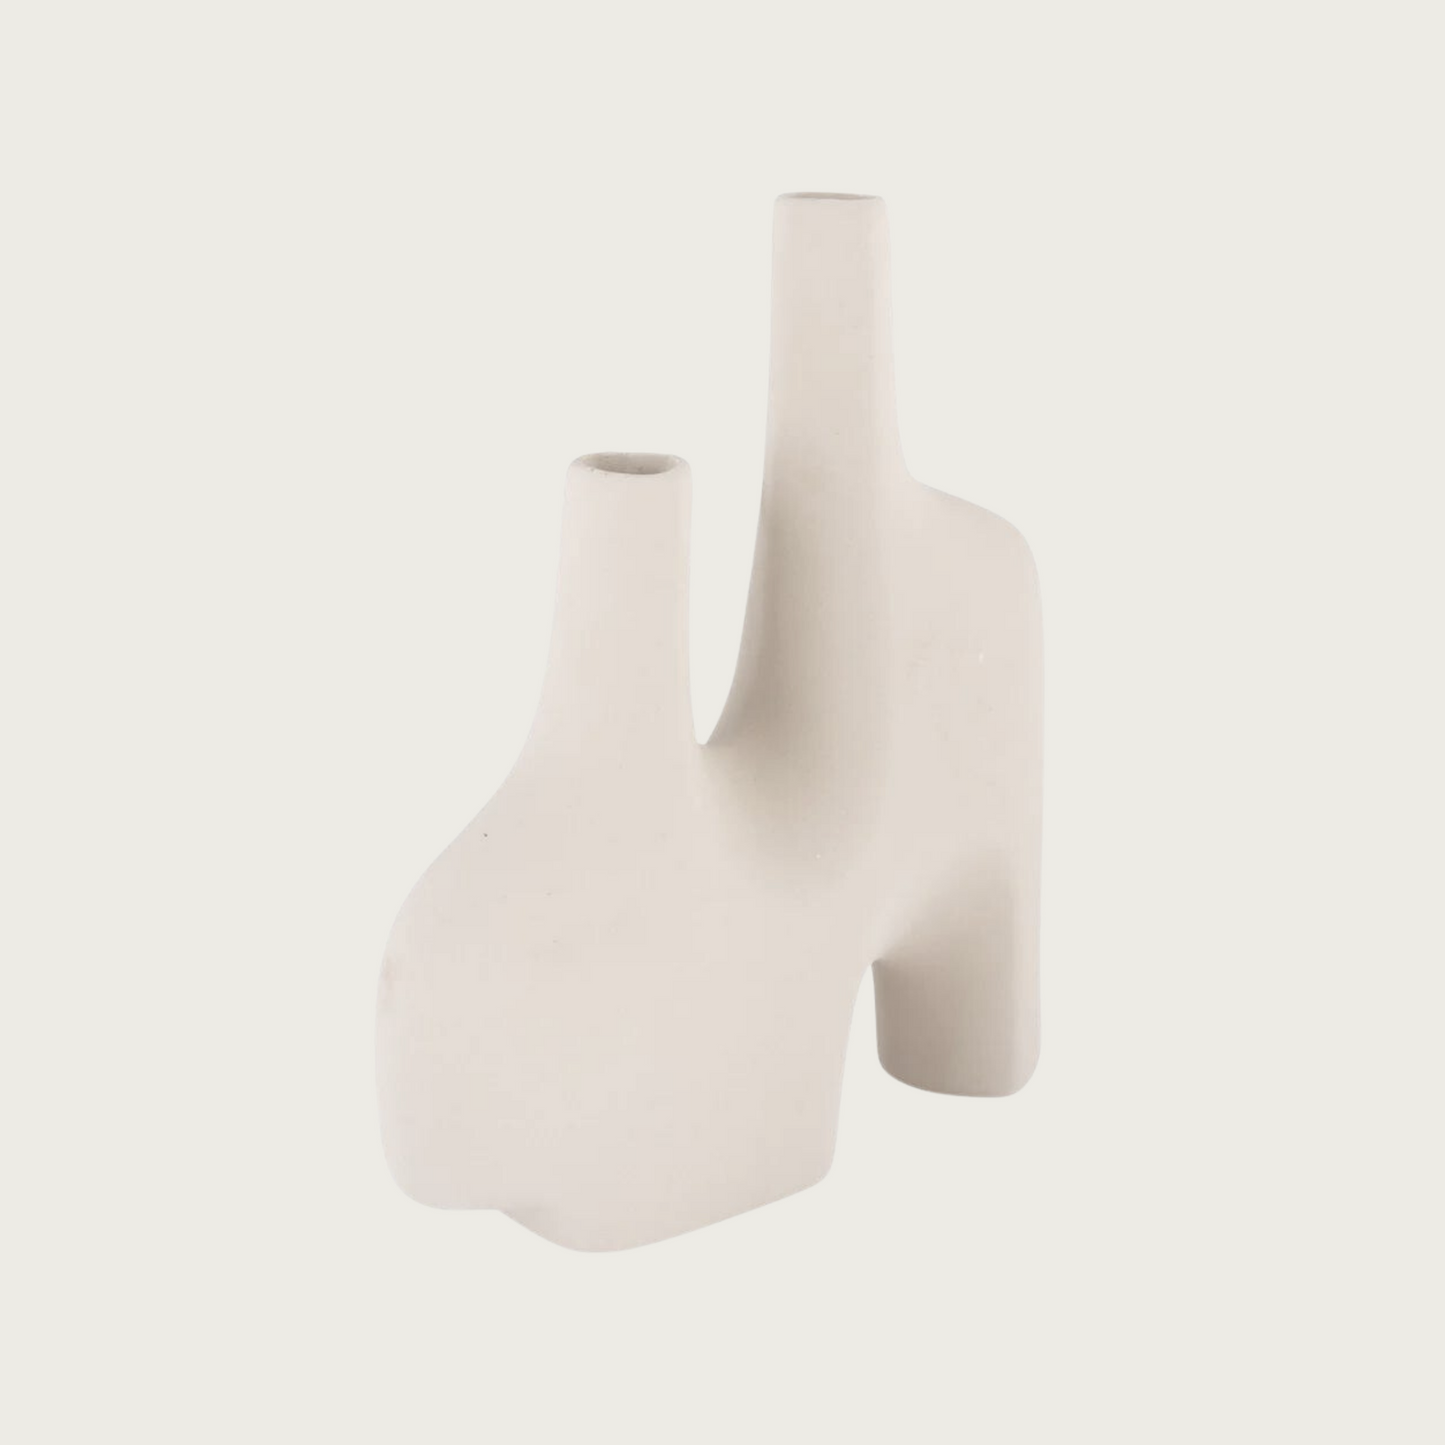 Vase in sand ceramic